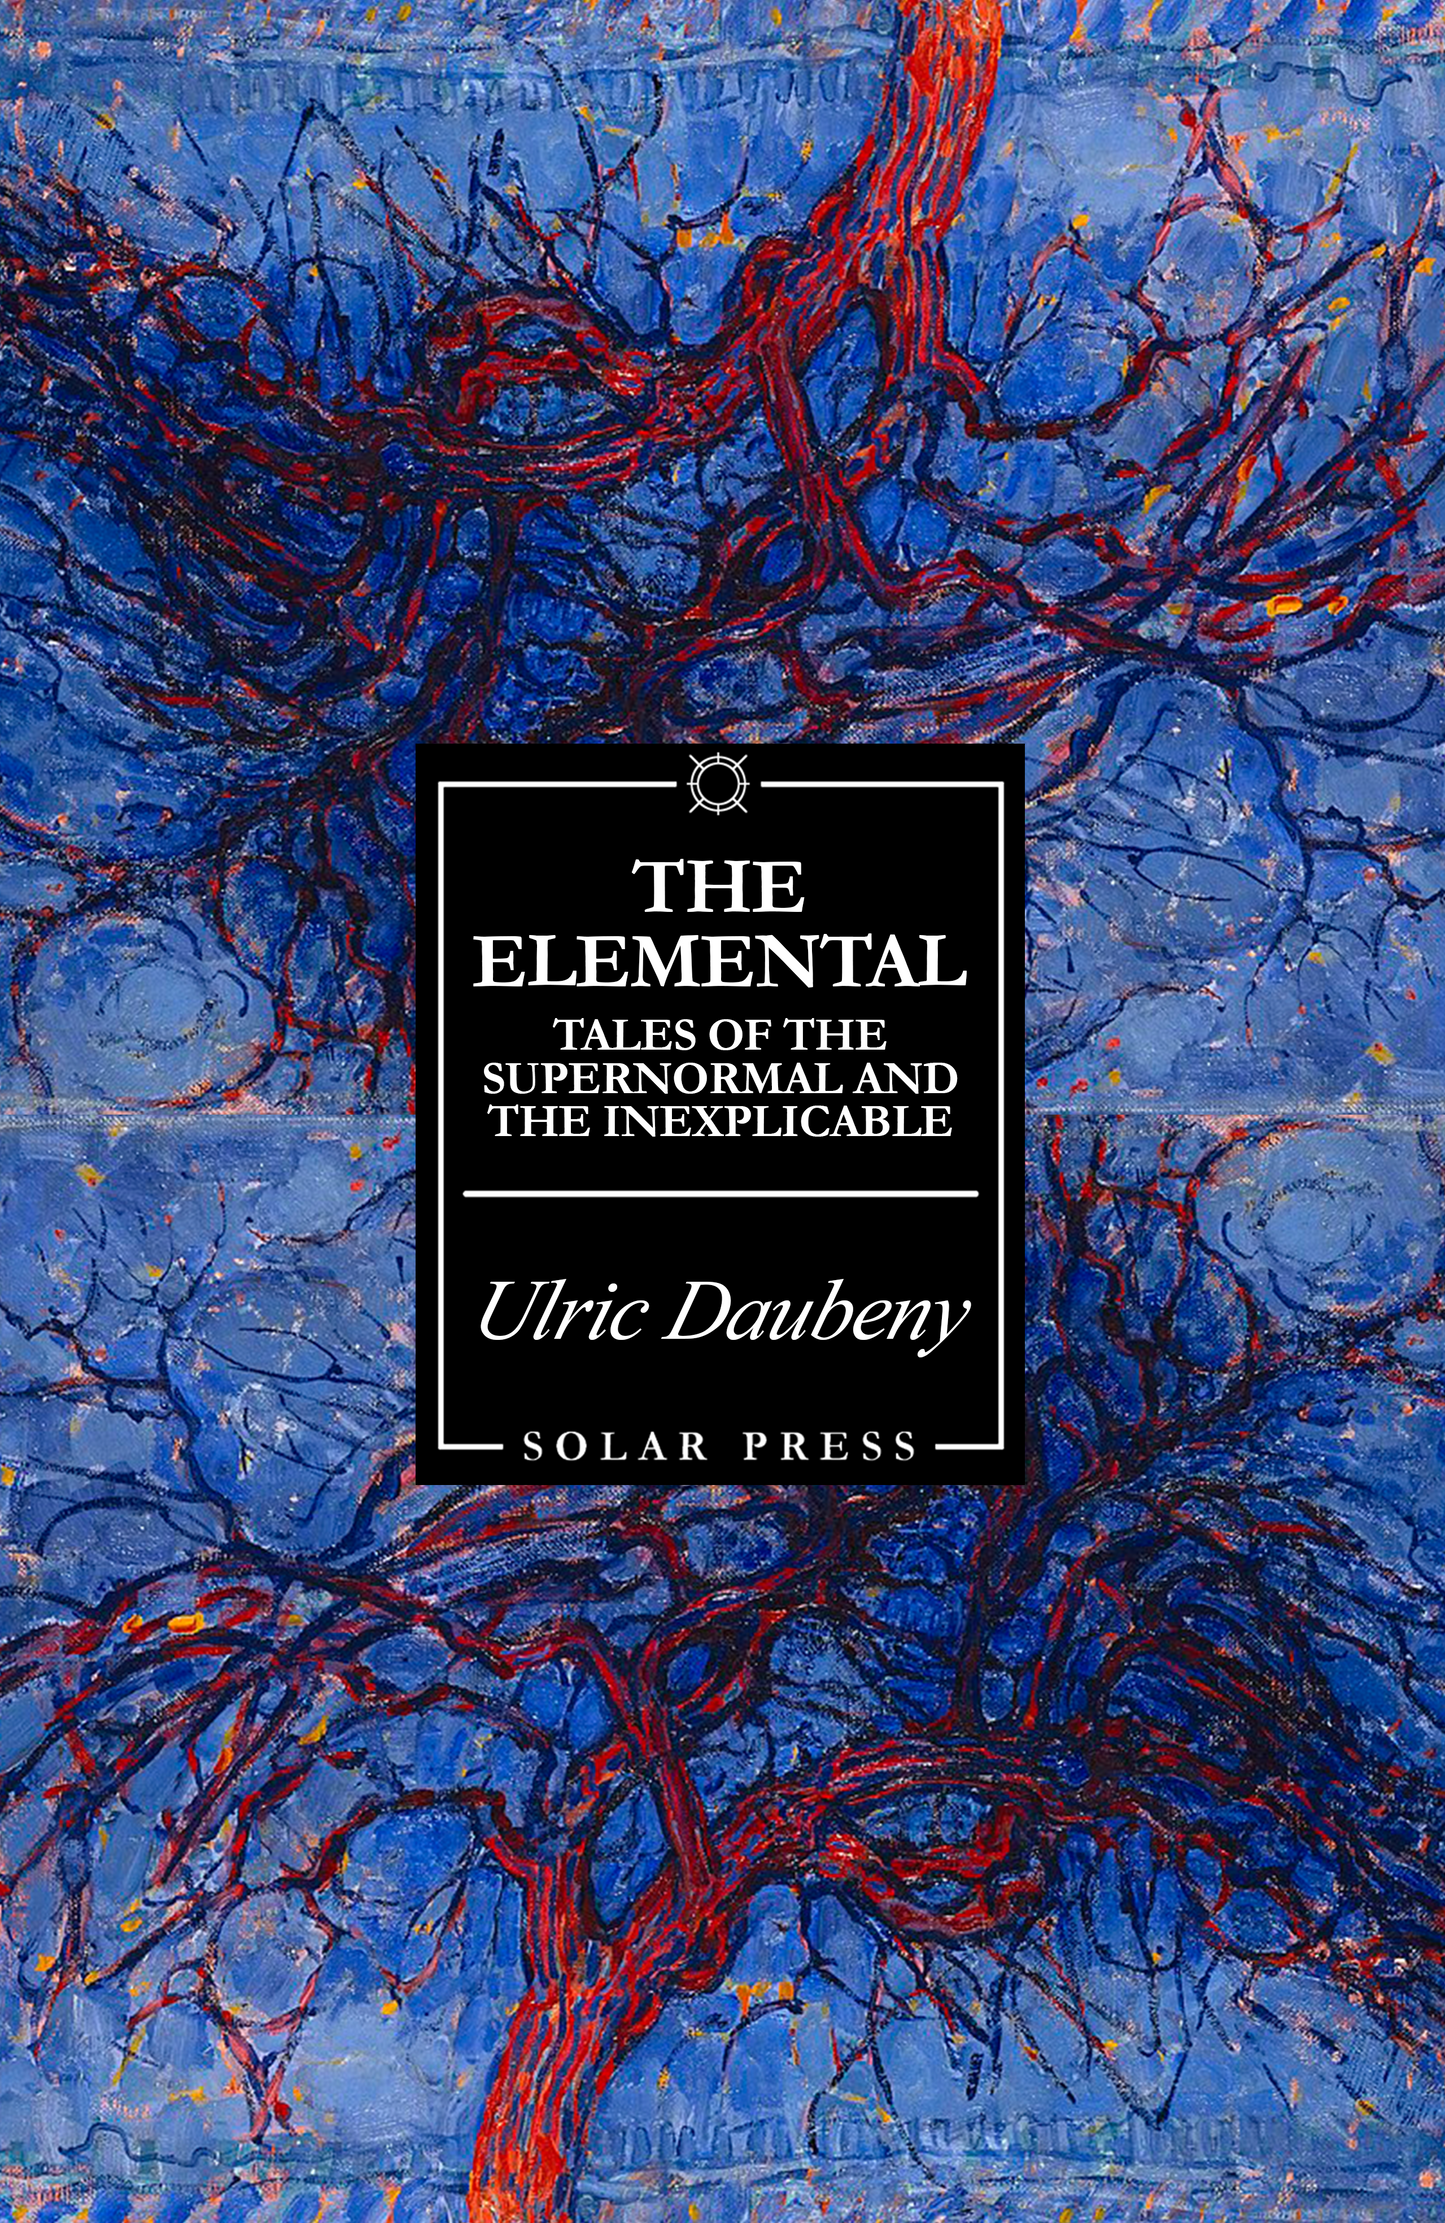 The Elemental by Ulric Daubeney